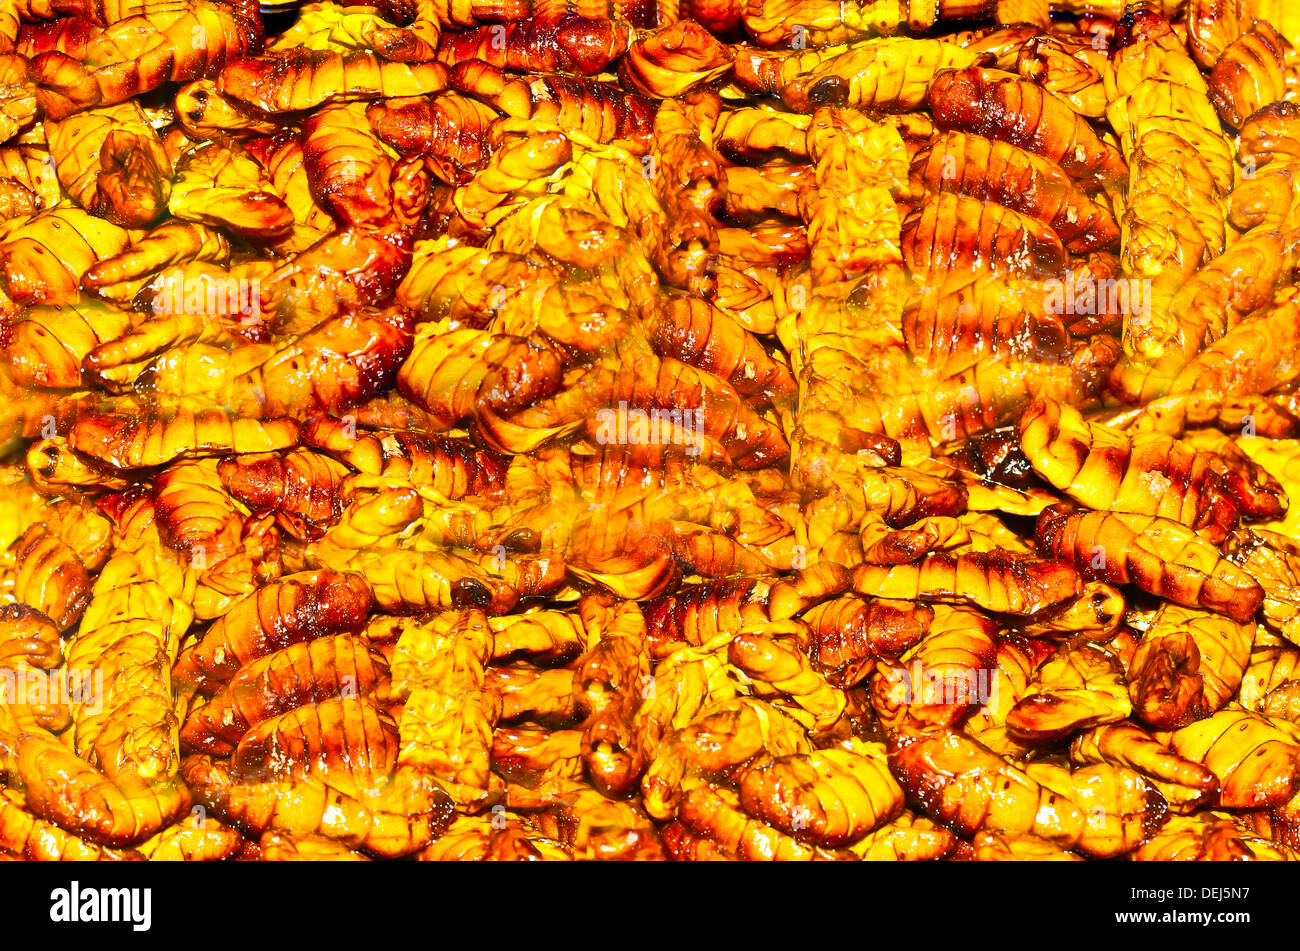 Fried silk worm Stock Photo